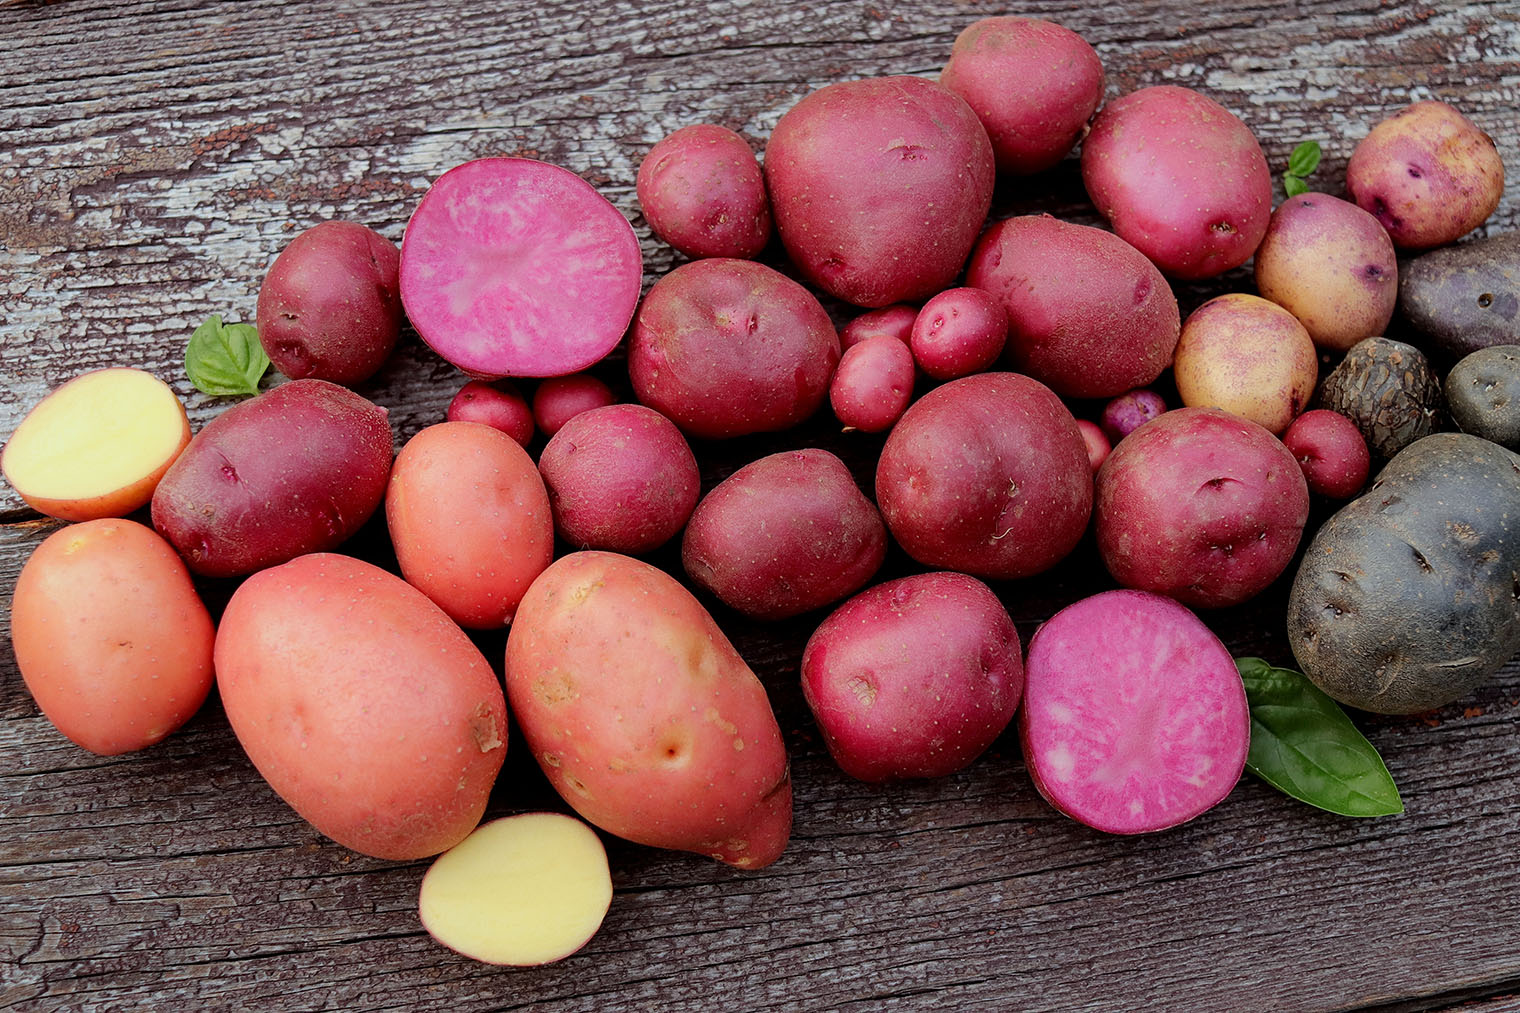 Картошка с розовой и фиолетовой мякотью. Фотография: Olga Bondas / Shutterstock